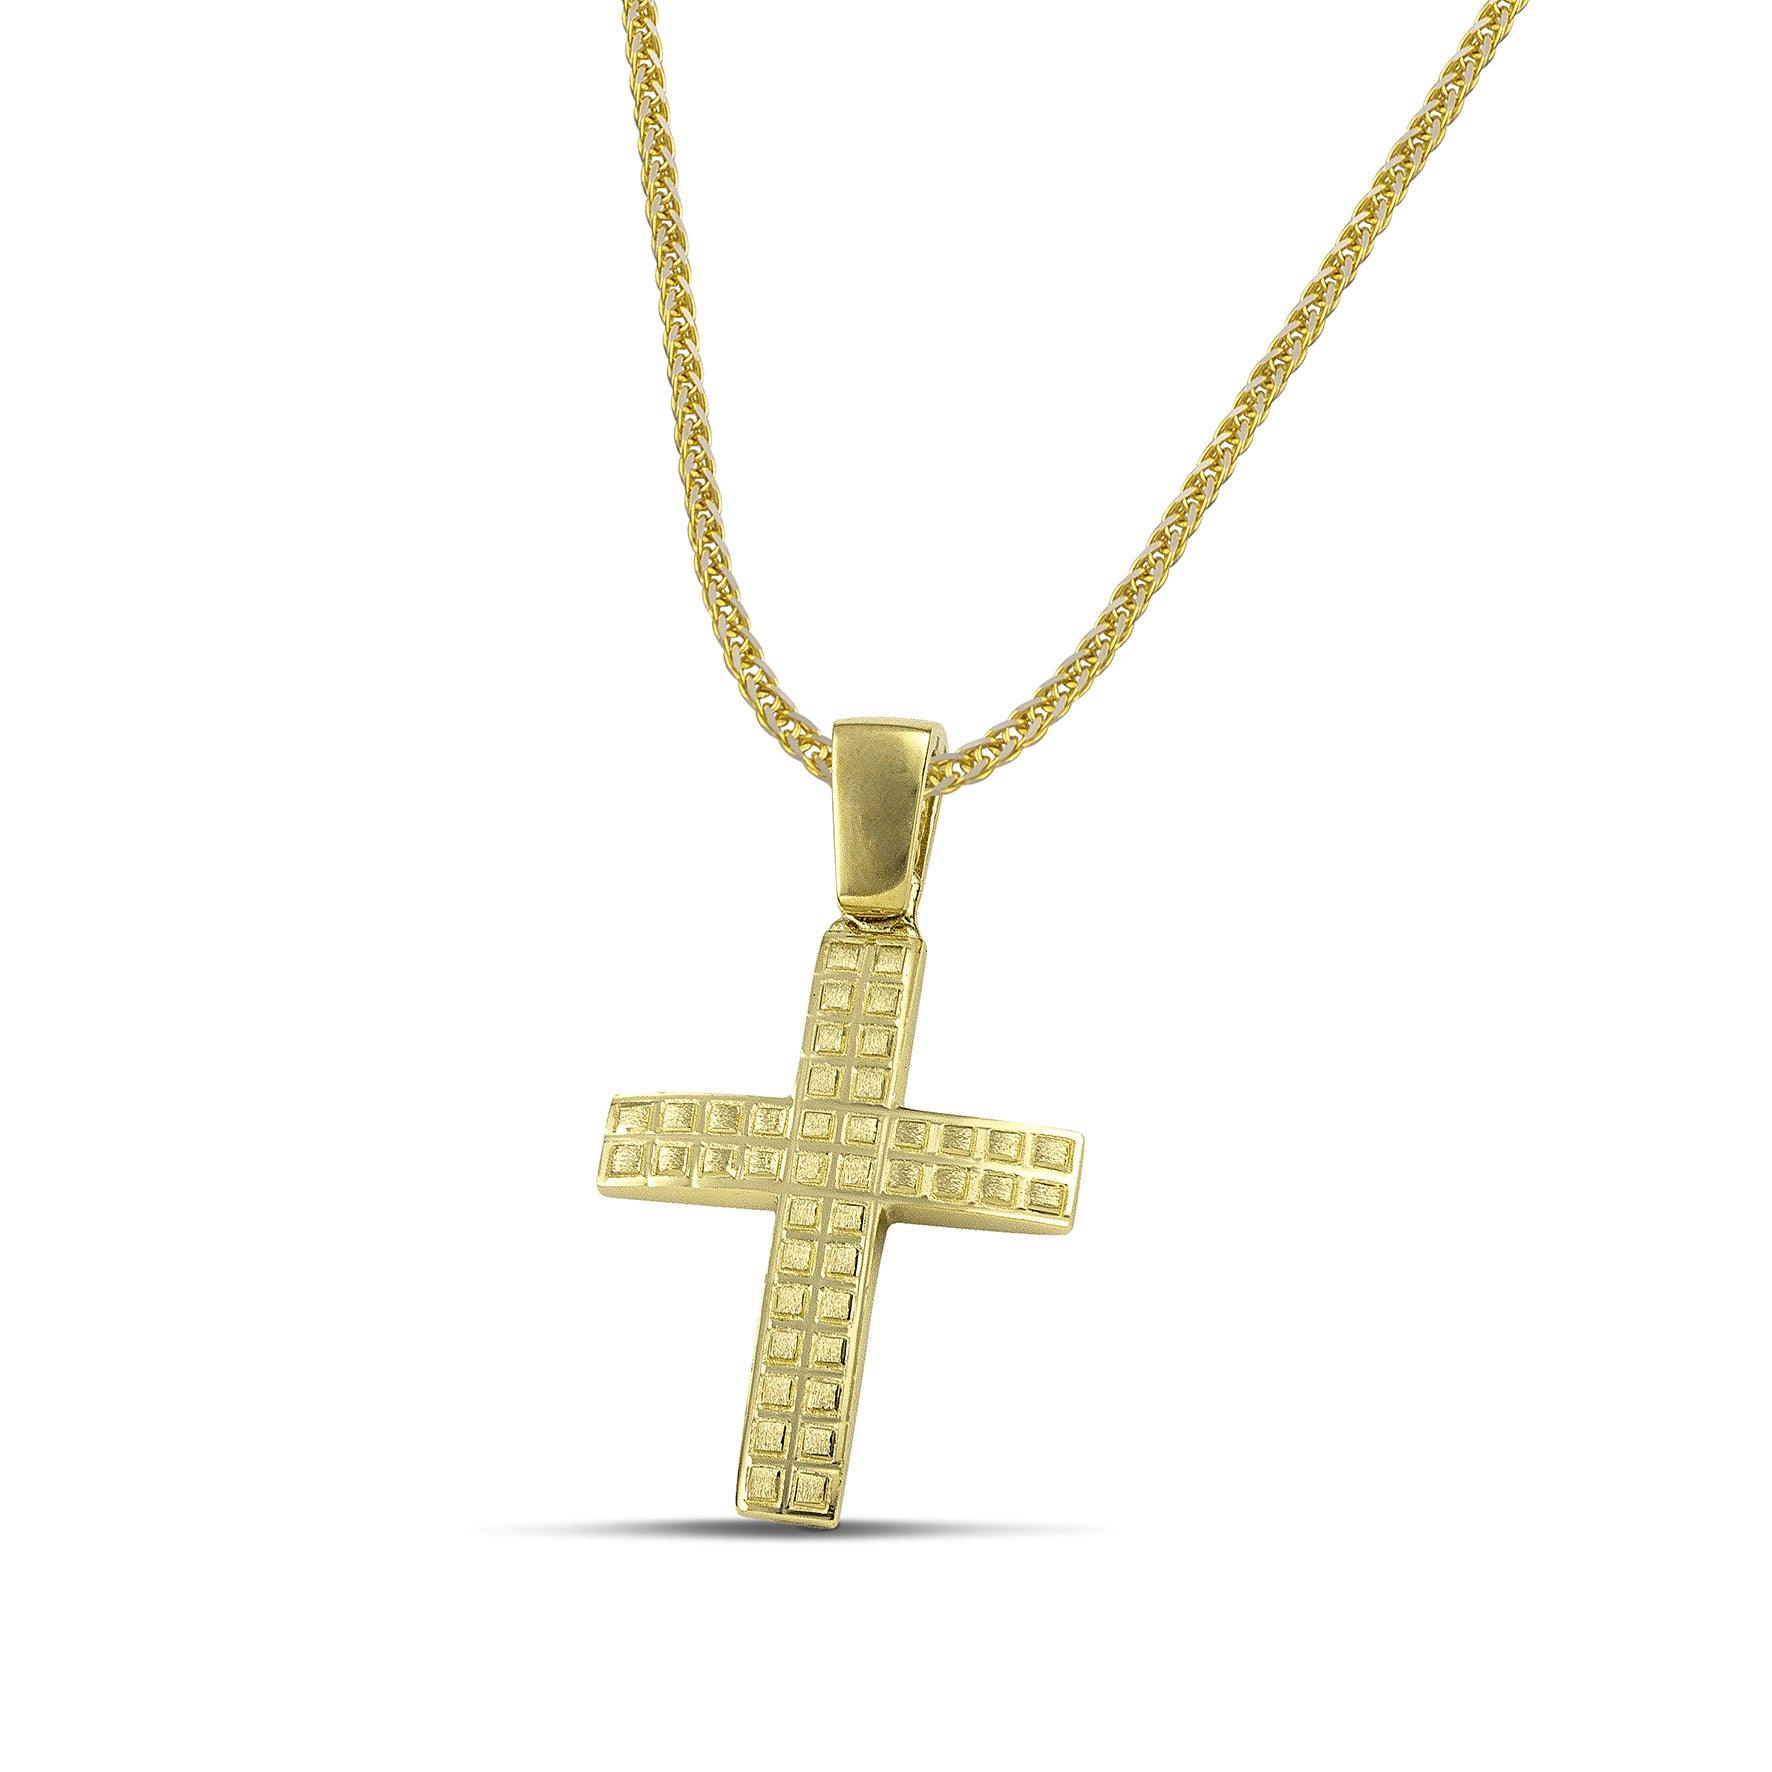 Ανδρικός χρυσός σταυρός βάπτισης με τετράγωνα σχέδια, σε χοντρή αλυσίδα.